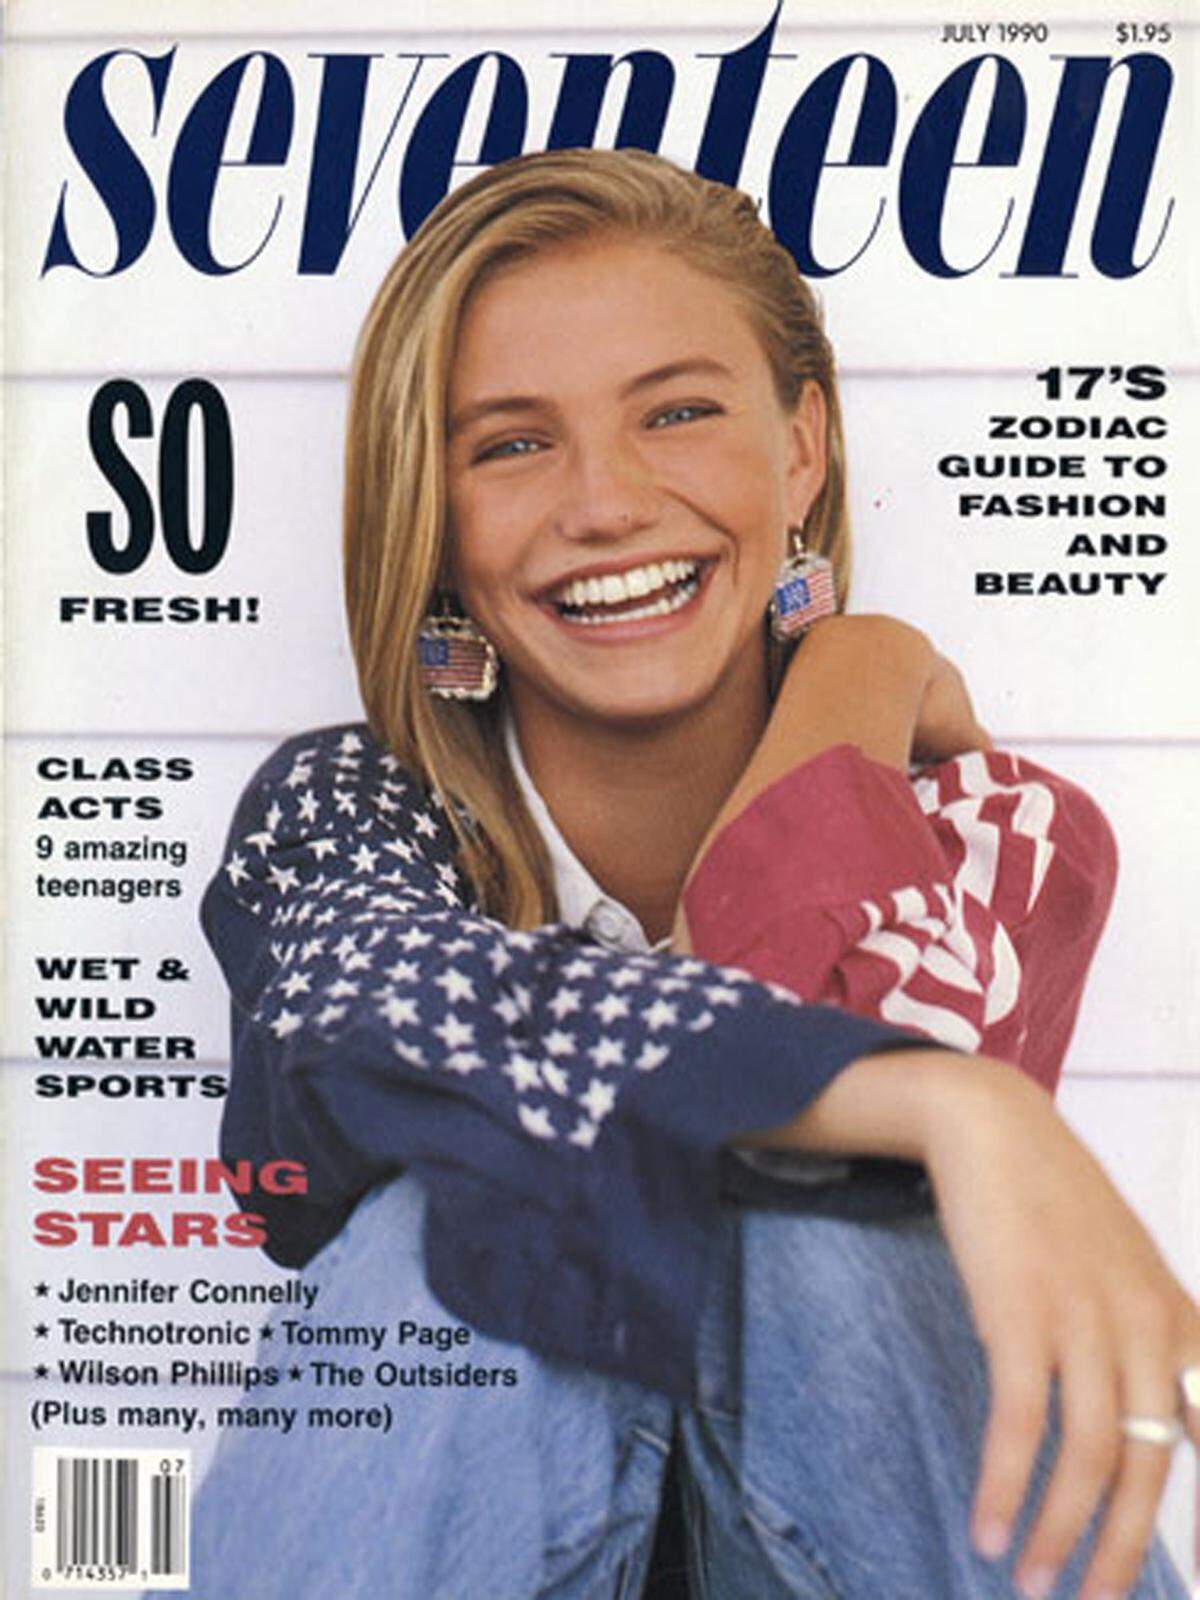 Der Öffentlichkeit präsentiert hat sich auch Cameron Diaz zuerst als Model. Mit 16 Jahren nahm sie die Agentur Elite Model Management unter Vertrag, mit 17 Jahren schaffte sie es passenderweise auf das Cover von "Seventeen".